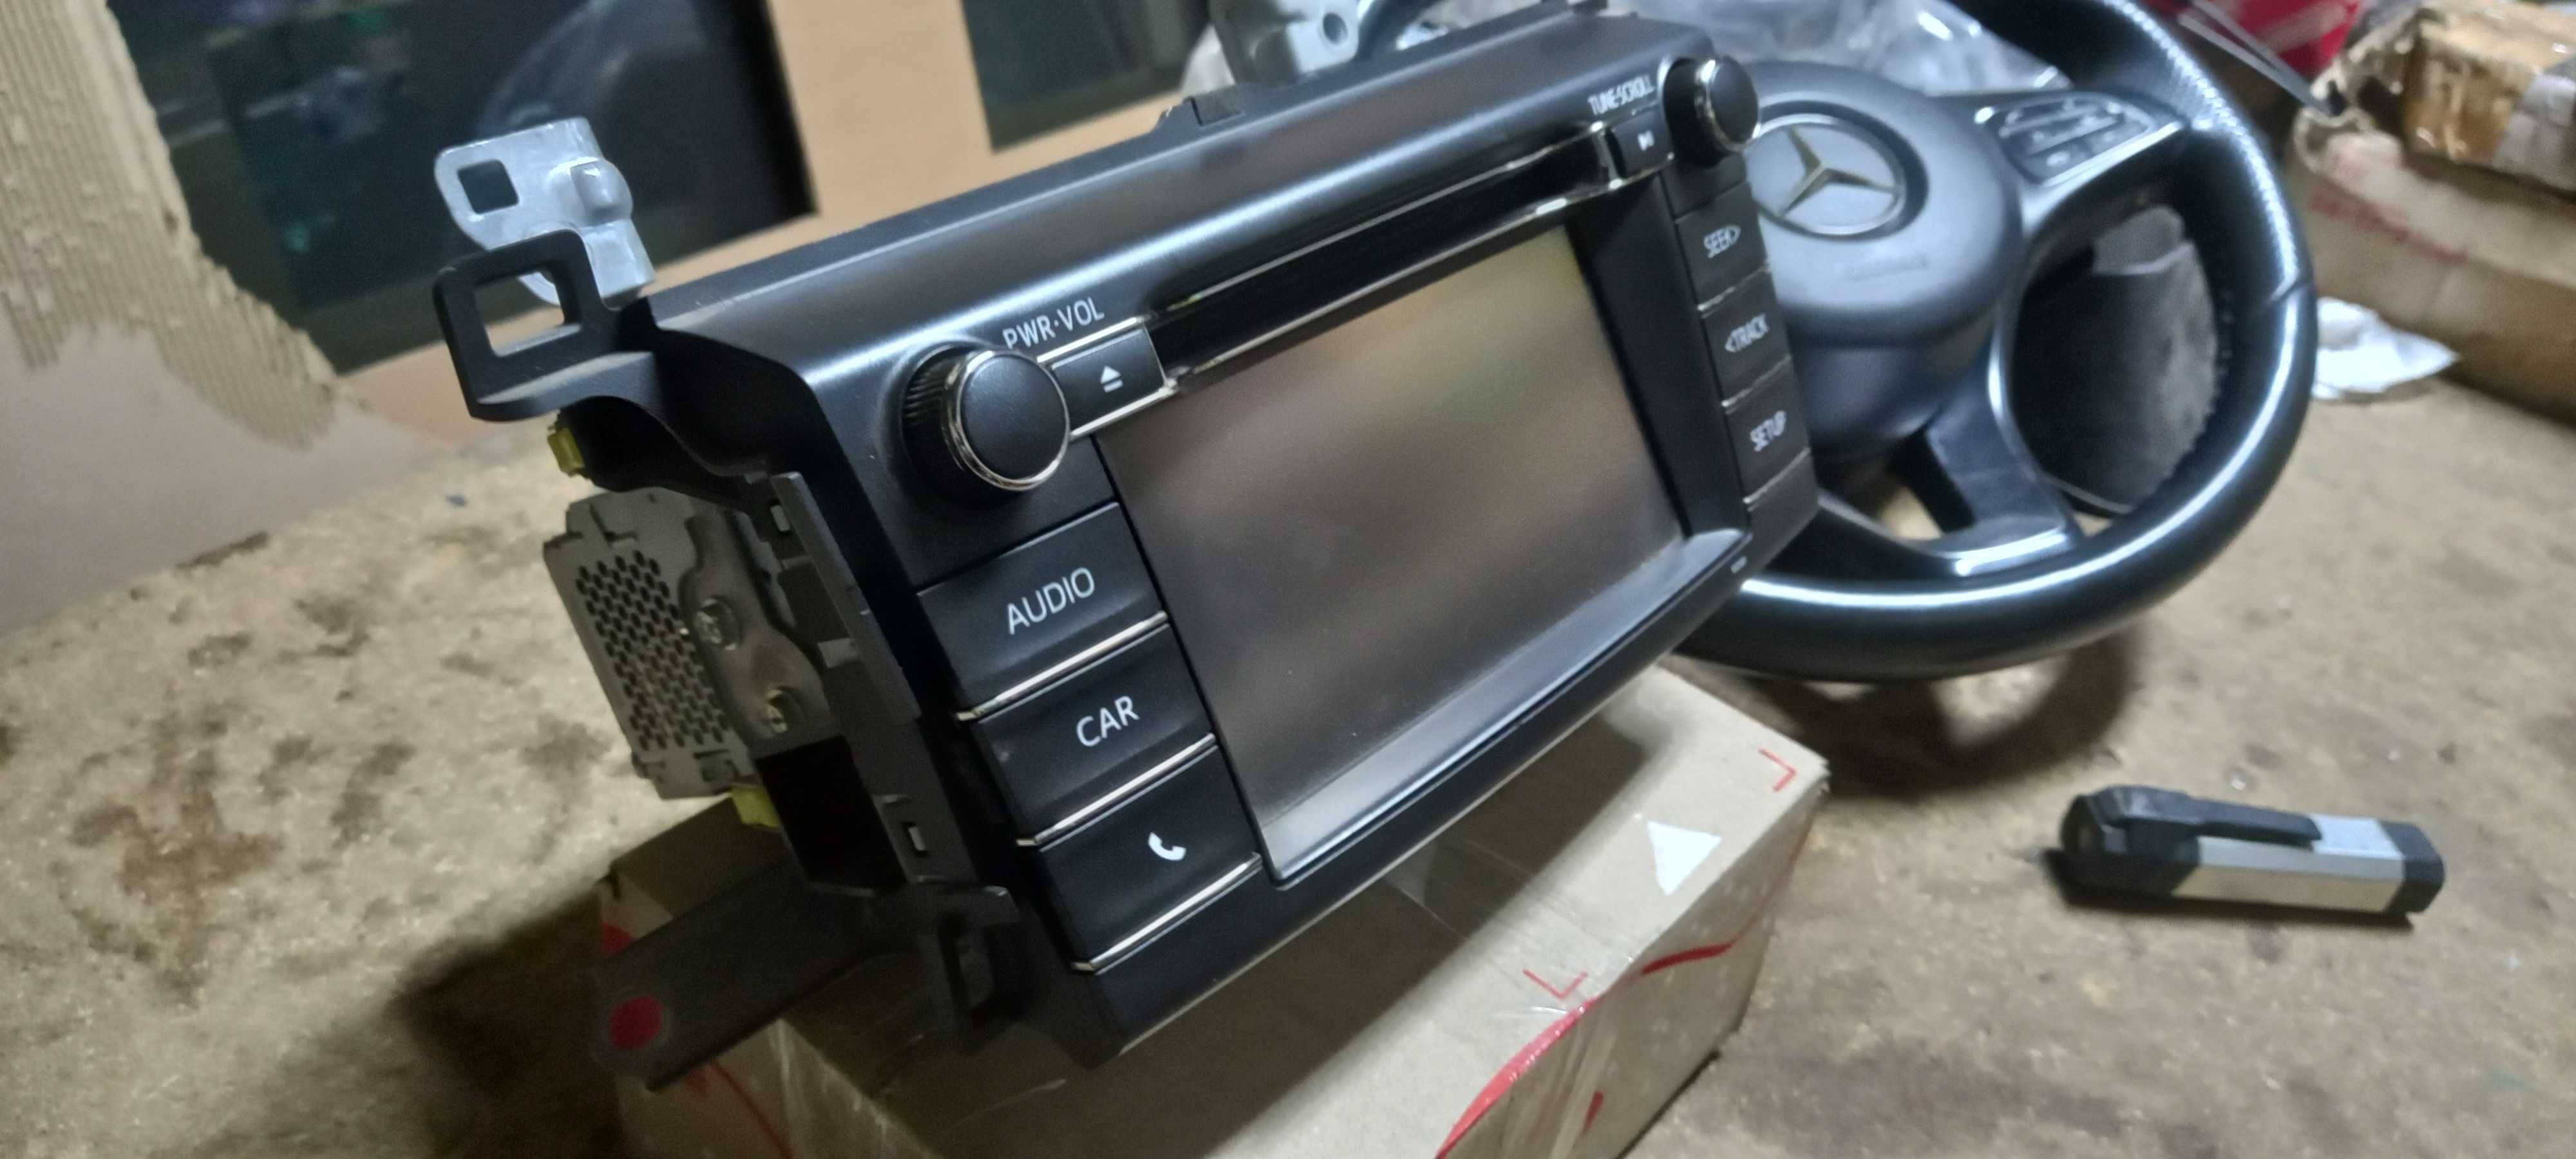 Автомагнитола заводская дисплей экран Toyota Rav4 2013-2018 год.